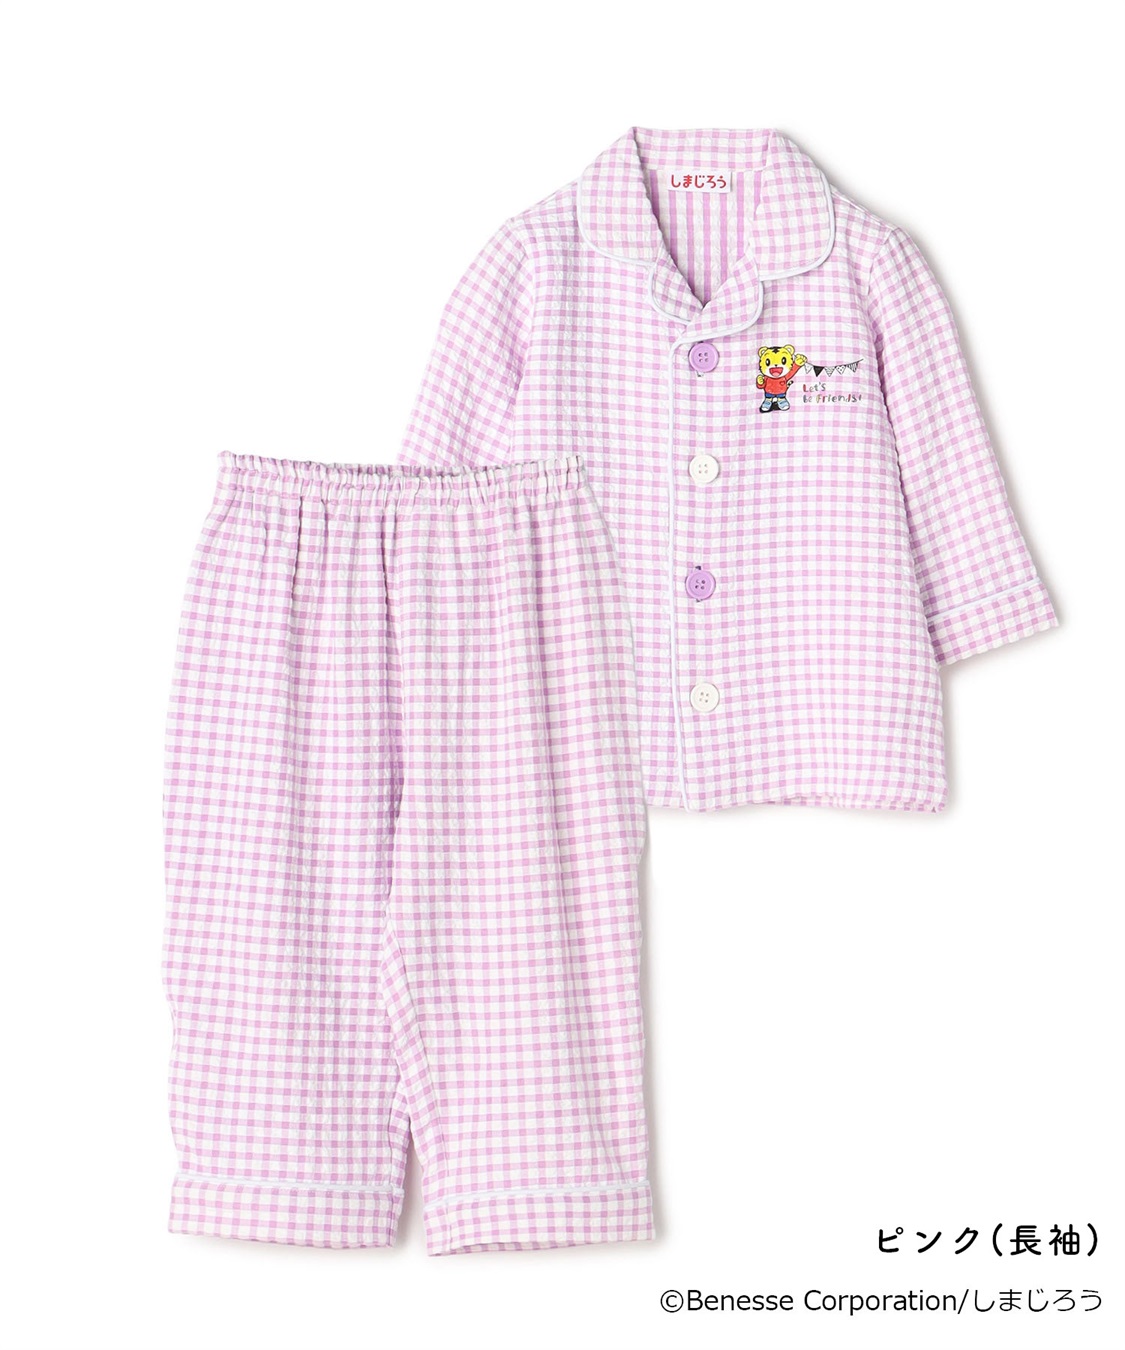 お着替え 半袖パジャマ (水色) サイズ90cm 綿100% パジャマ 前開き